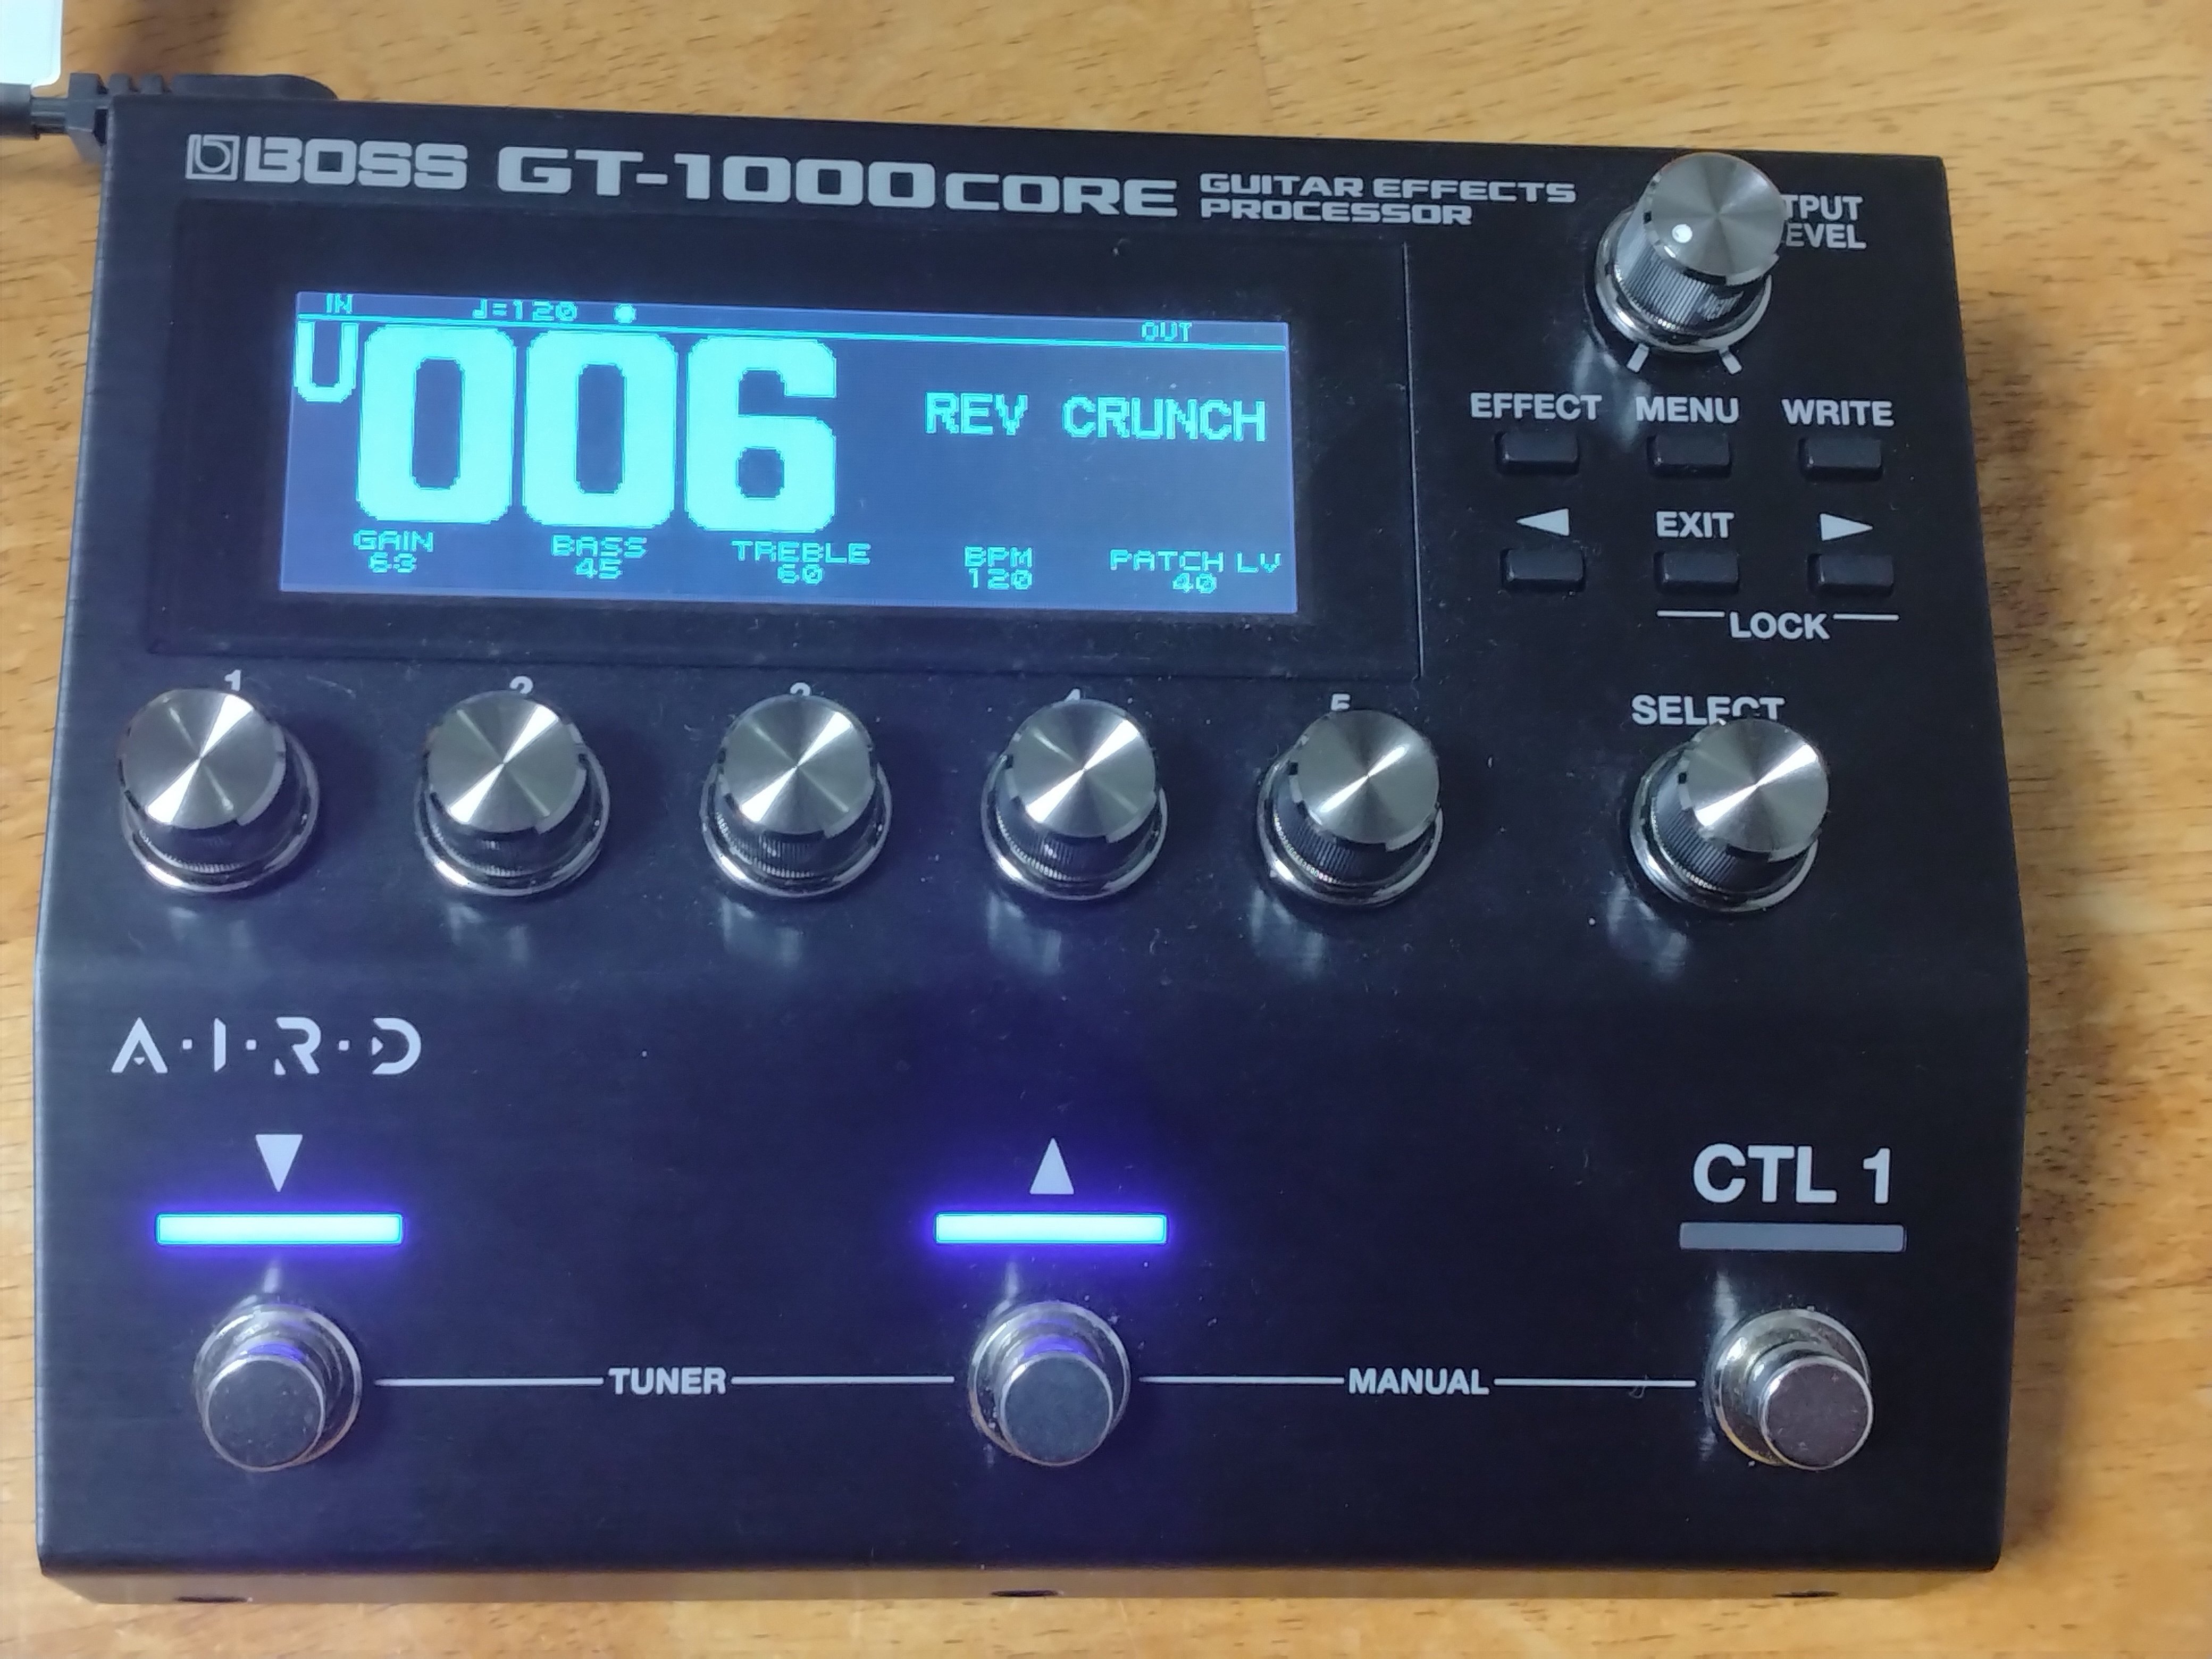 BOSS GT 1000 core